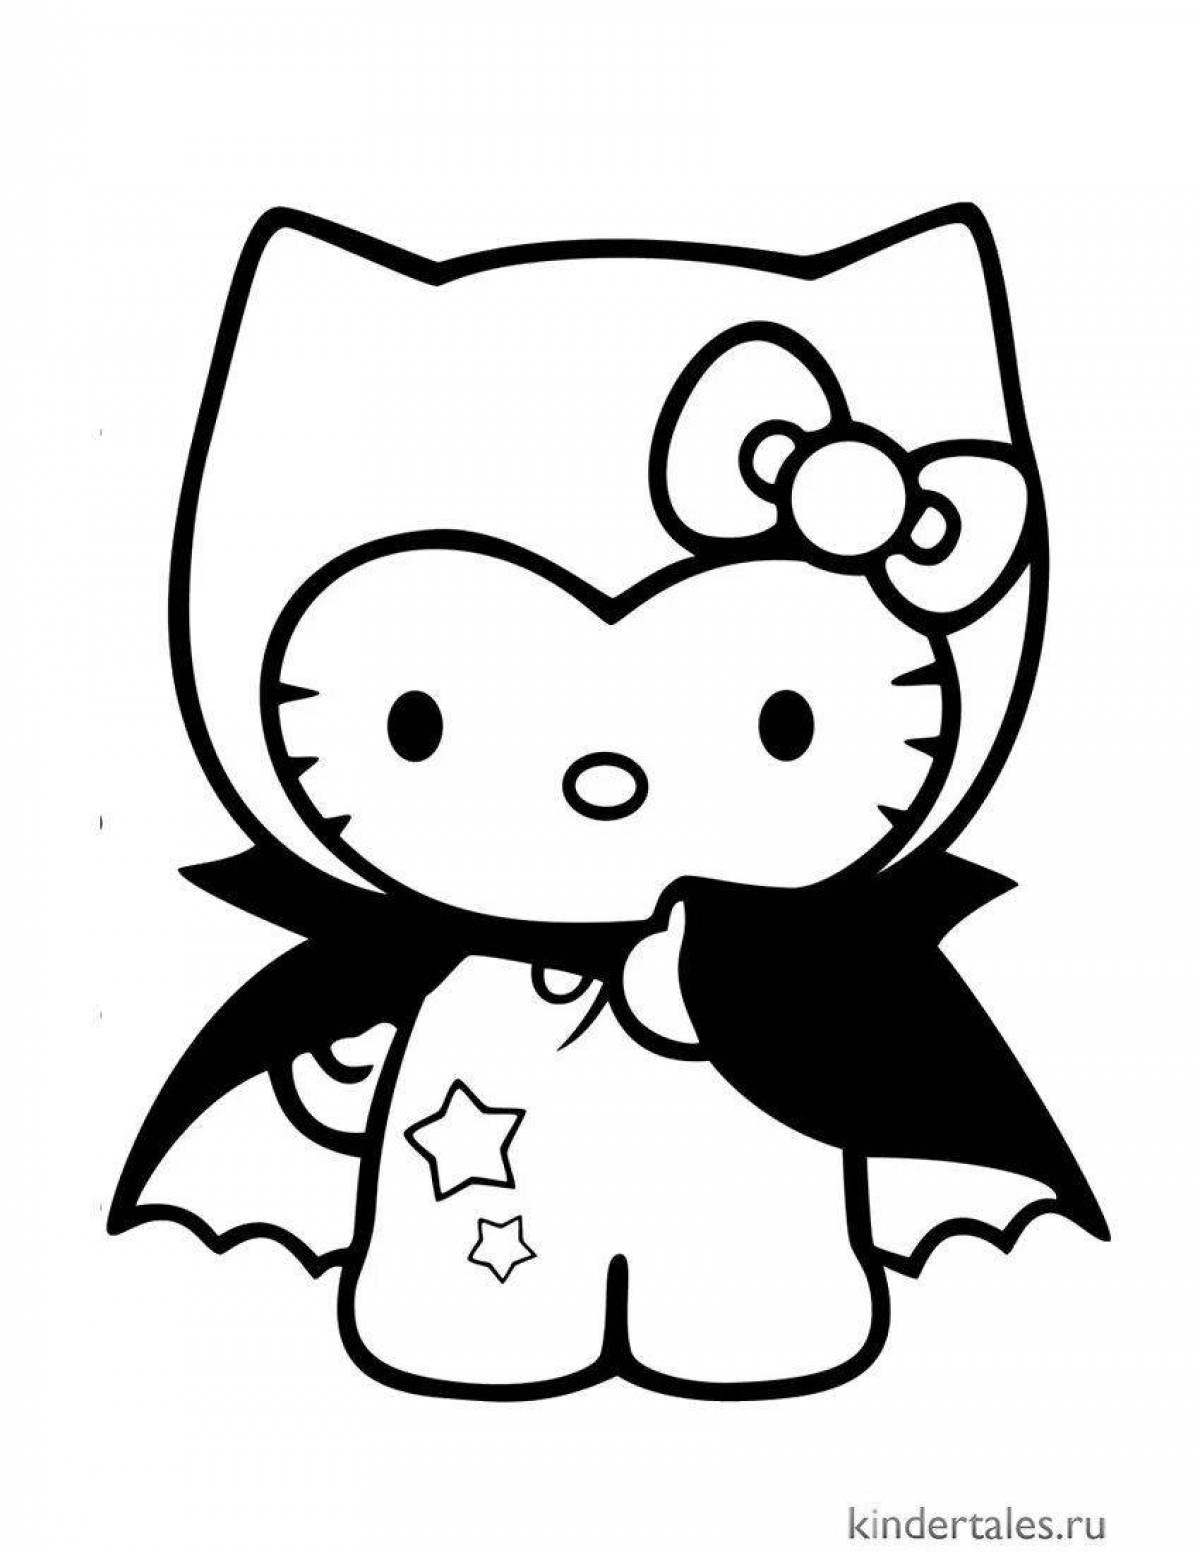 Радостная раскраска hello kitty black and white kuromi